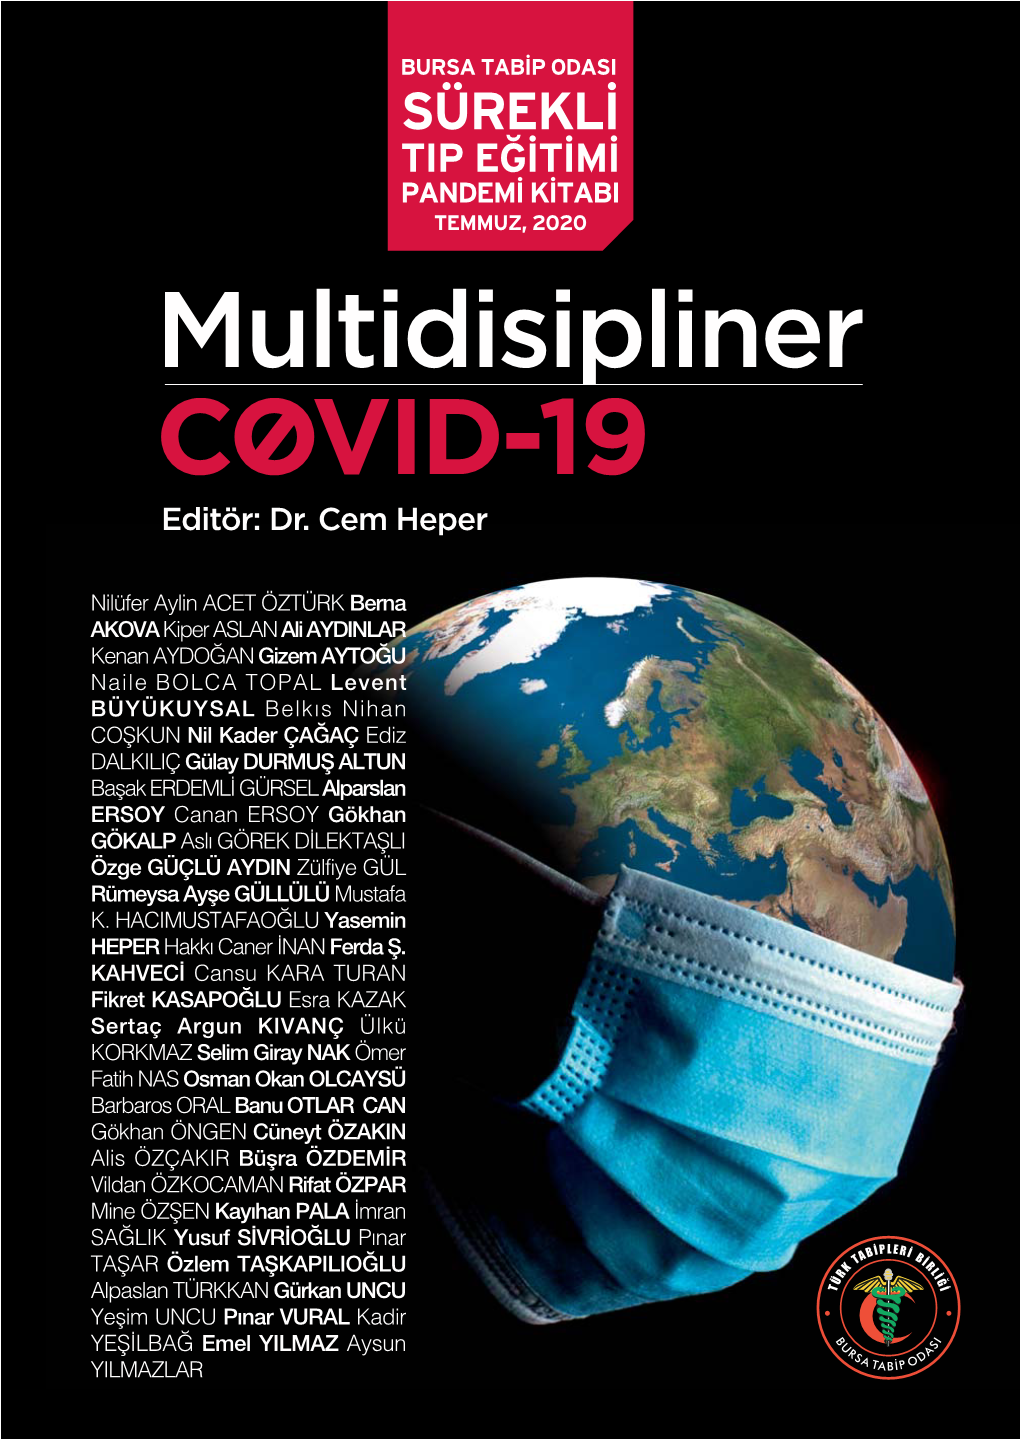 Multidisipliner COVID-19 Editör: Dr